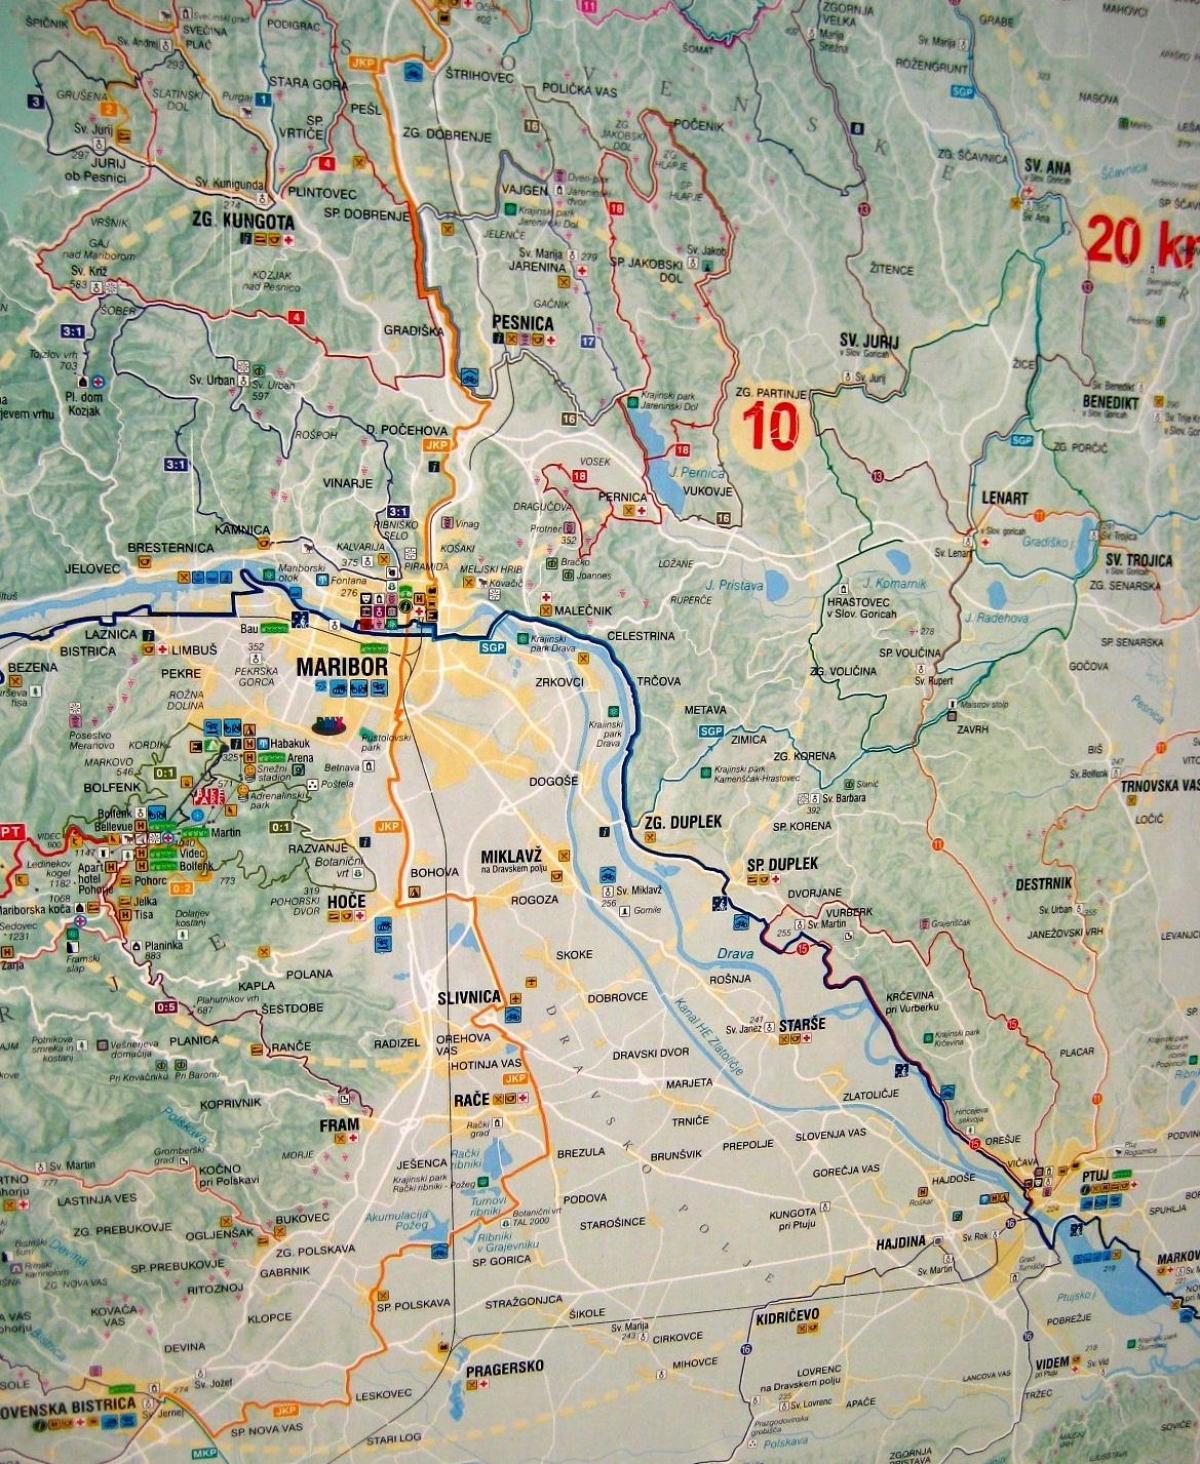 Mapa do acampamento Eslovénia